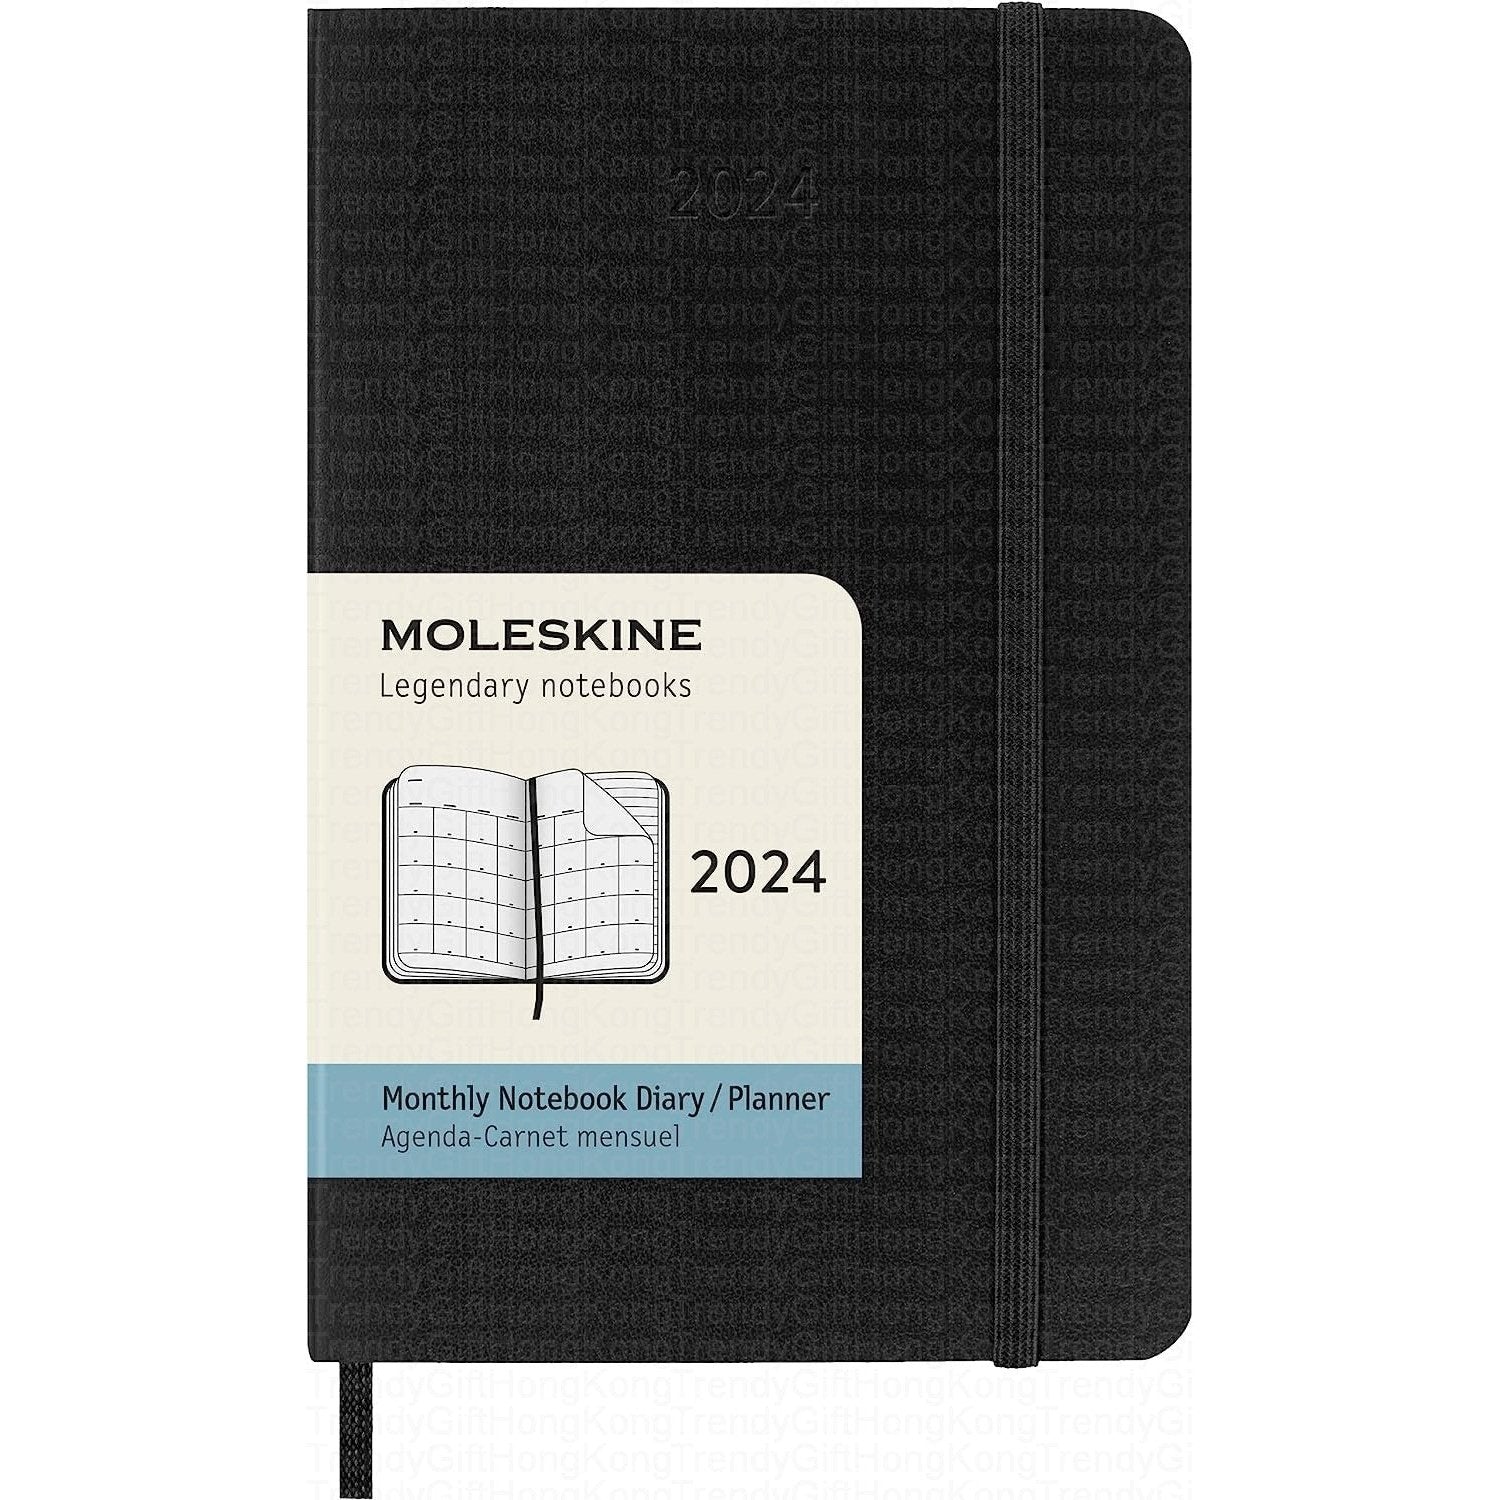 Moleskine 2024 12 Monthly Planner - Black Soft Cover trendygifthk